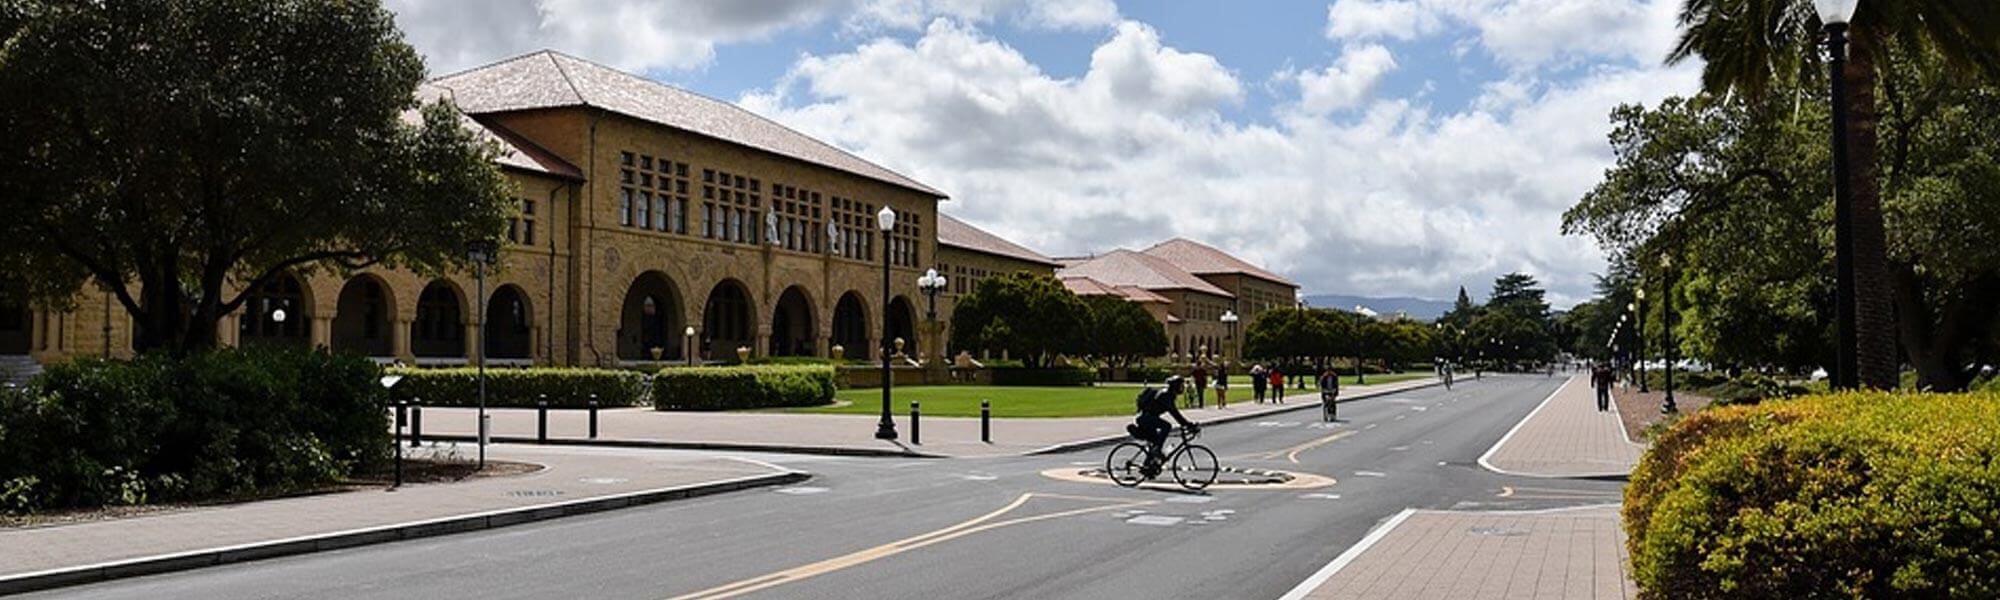 Stanford gsb seeks Demonstrated Leadership Potential